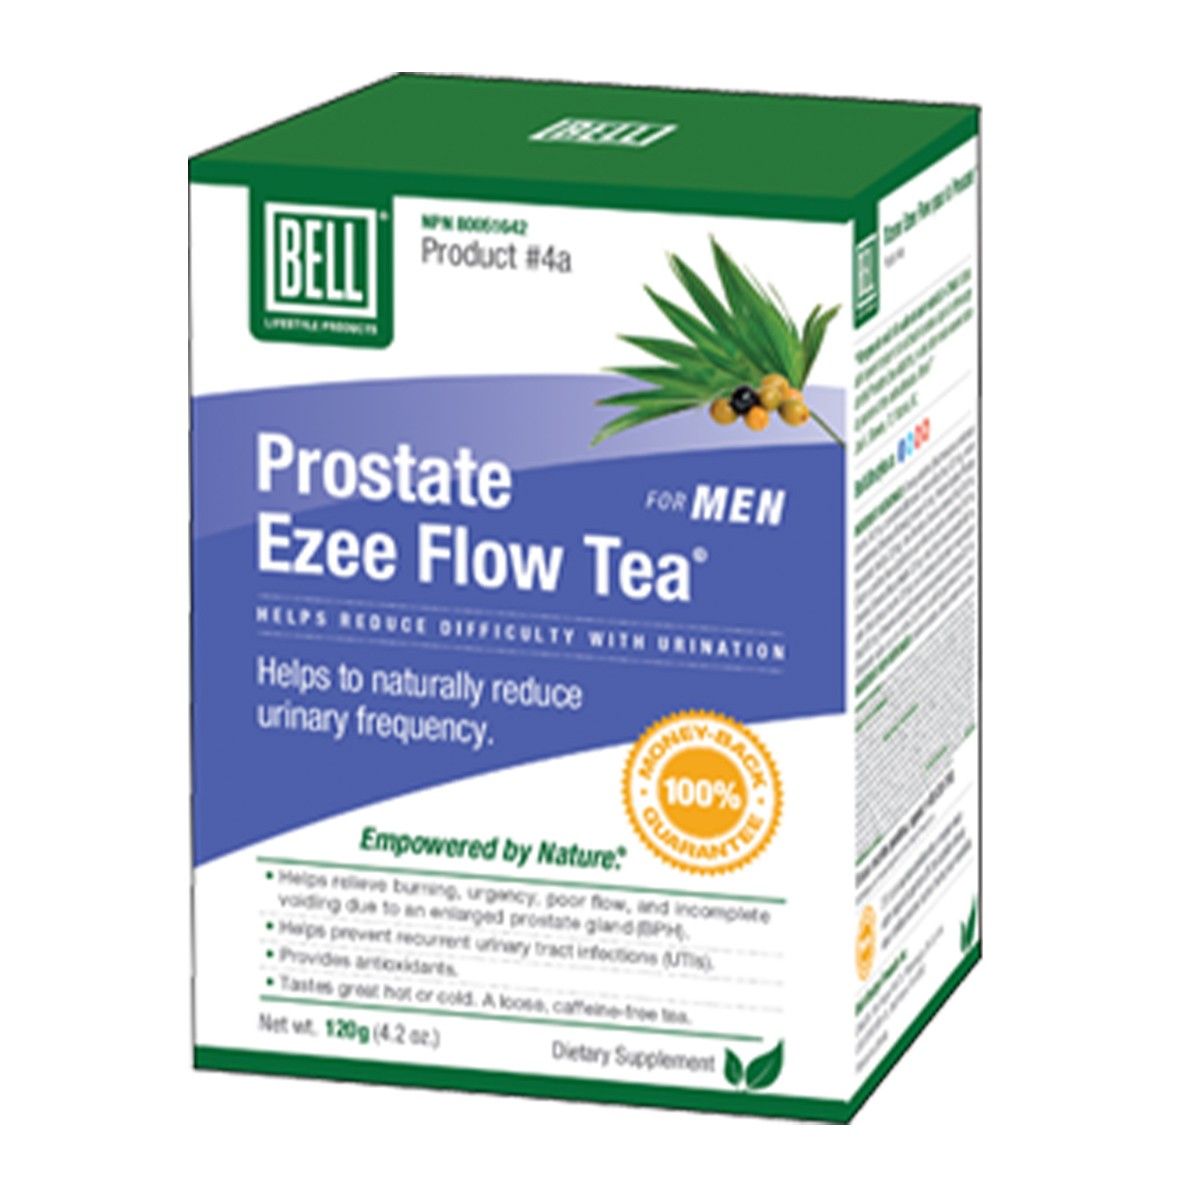 Prostate Ezee Flow Tea For Men 120g